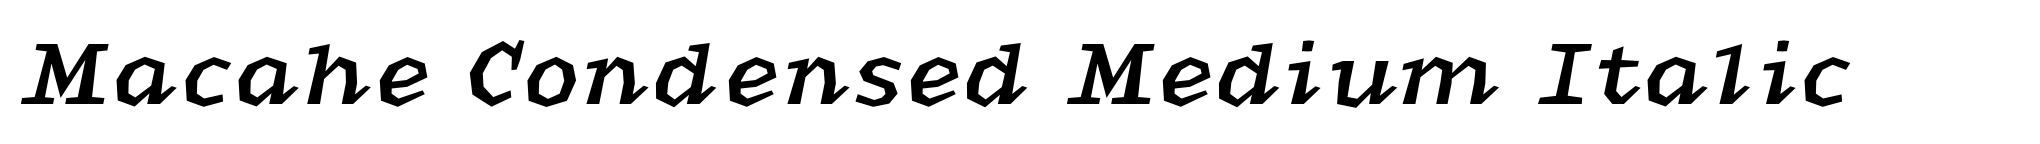 Macahe Condensed Medium Italic image